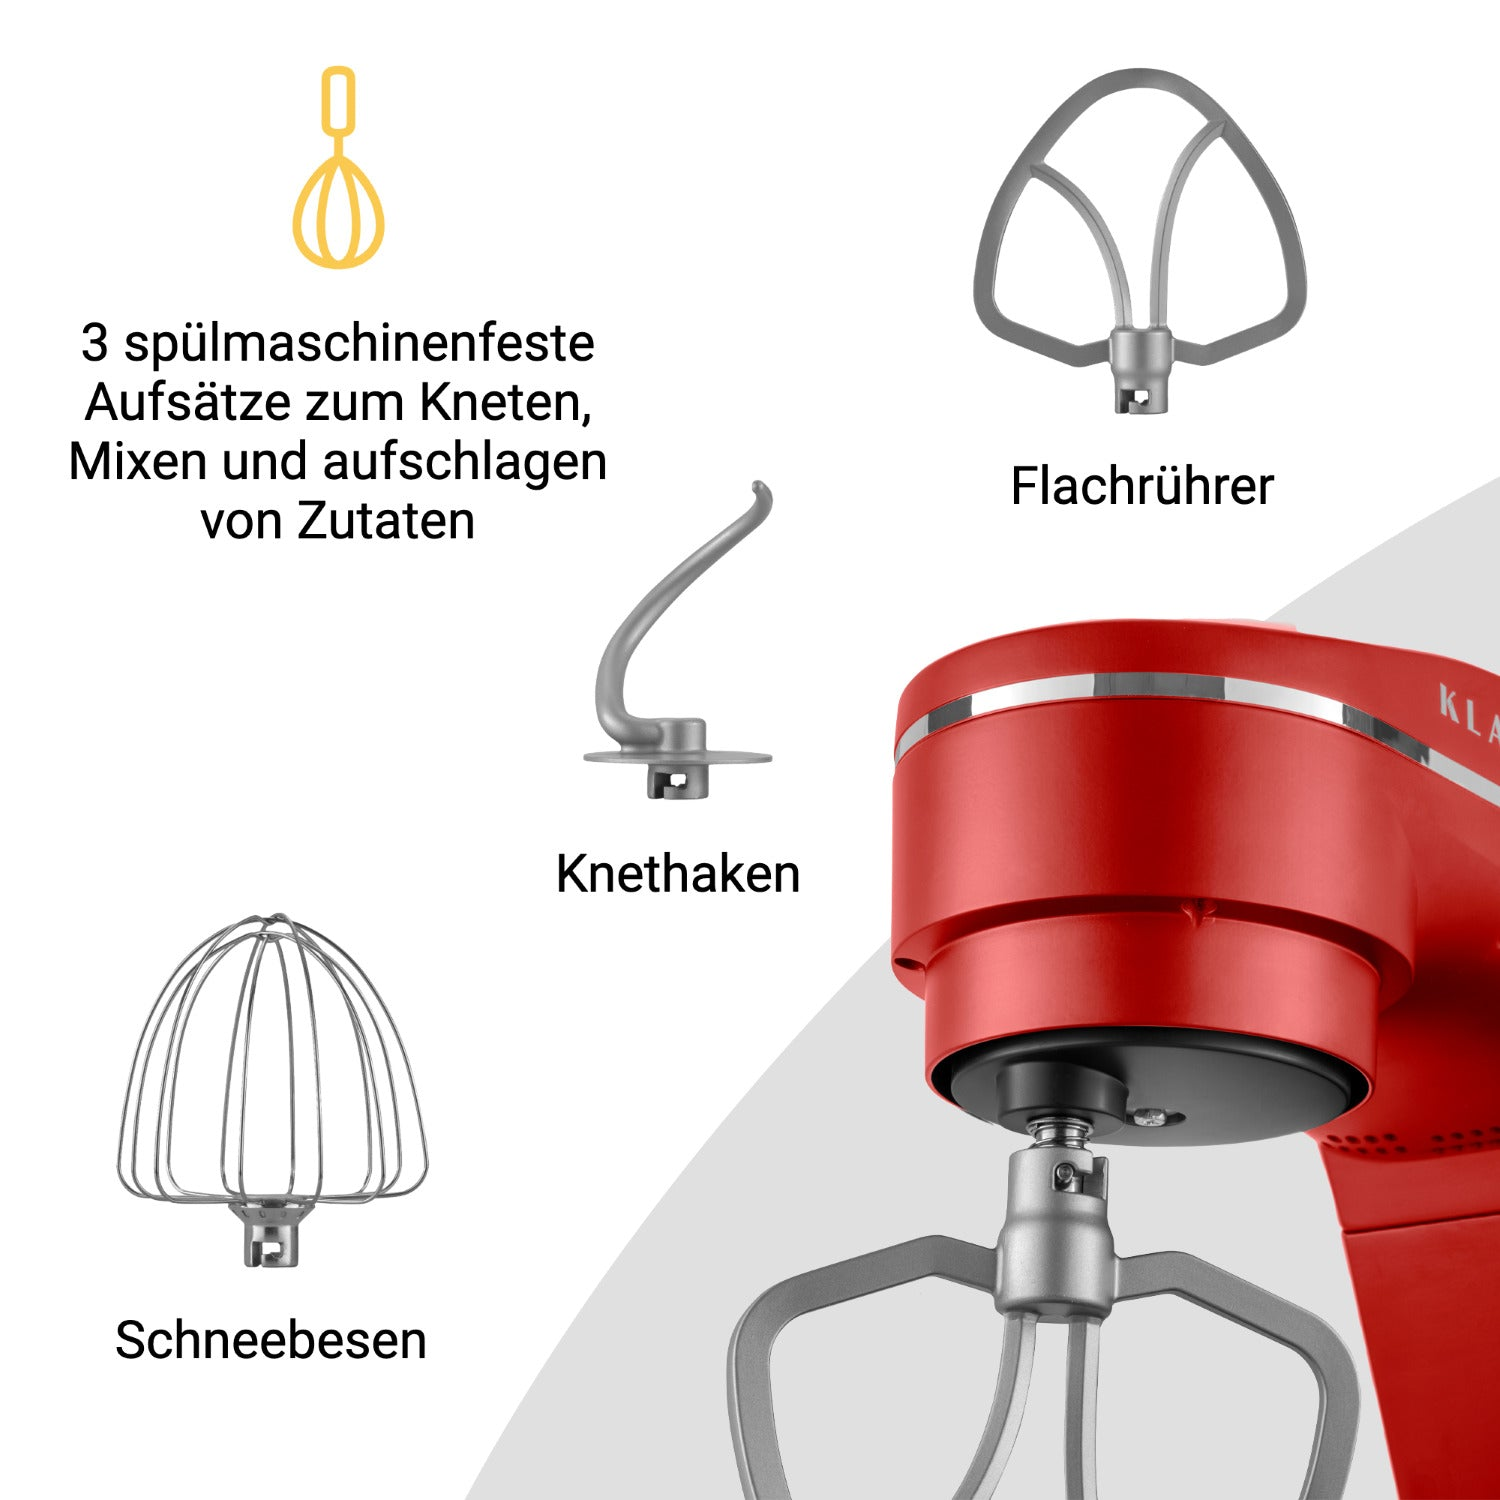 KLAMER Küchenmaschine - Rot Rot (1800 Küchenmaschine Watt)